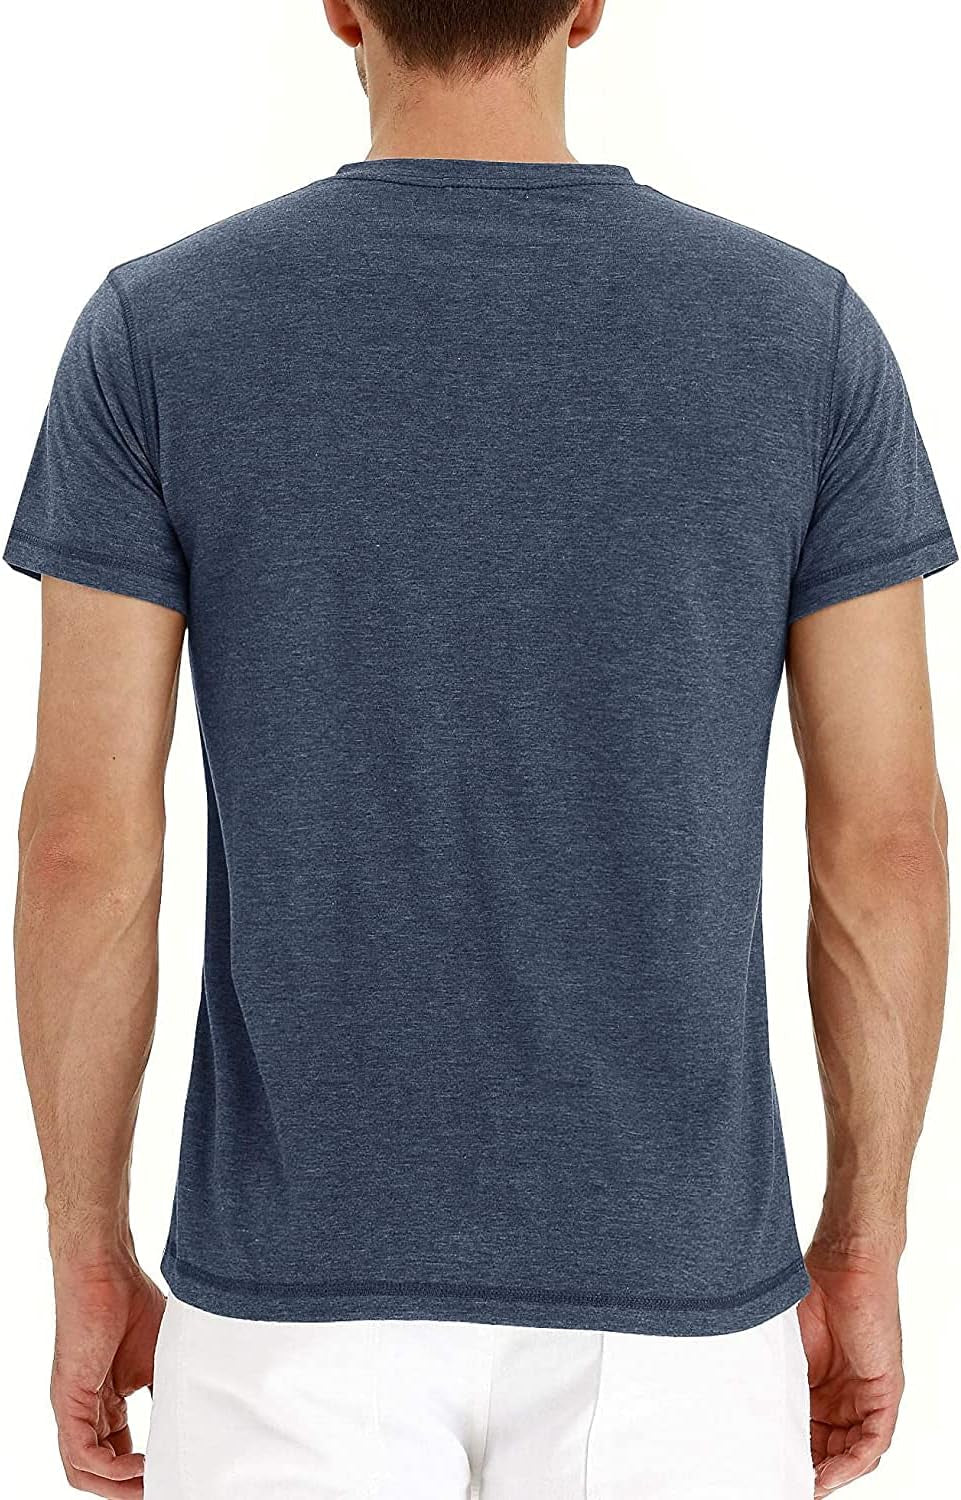 Mens Henley Short/Long Sleeve T-Shirt Cotton Casual Shirt